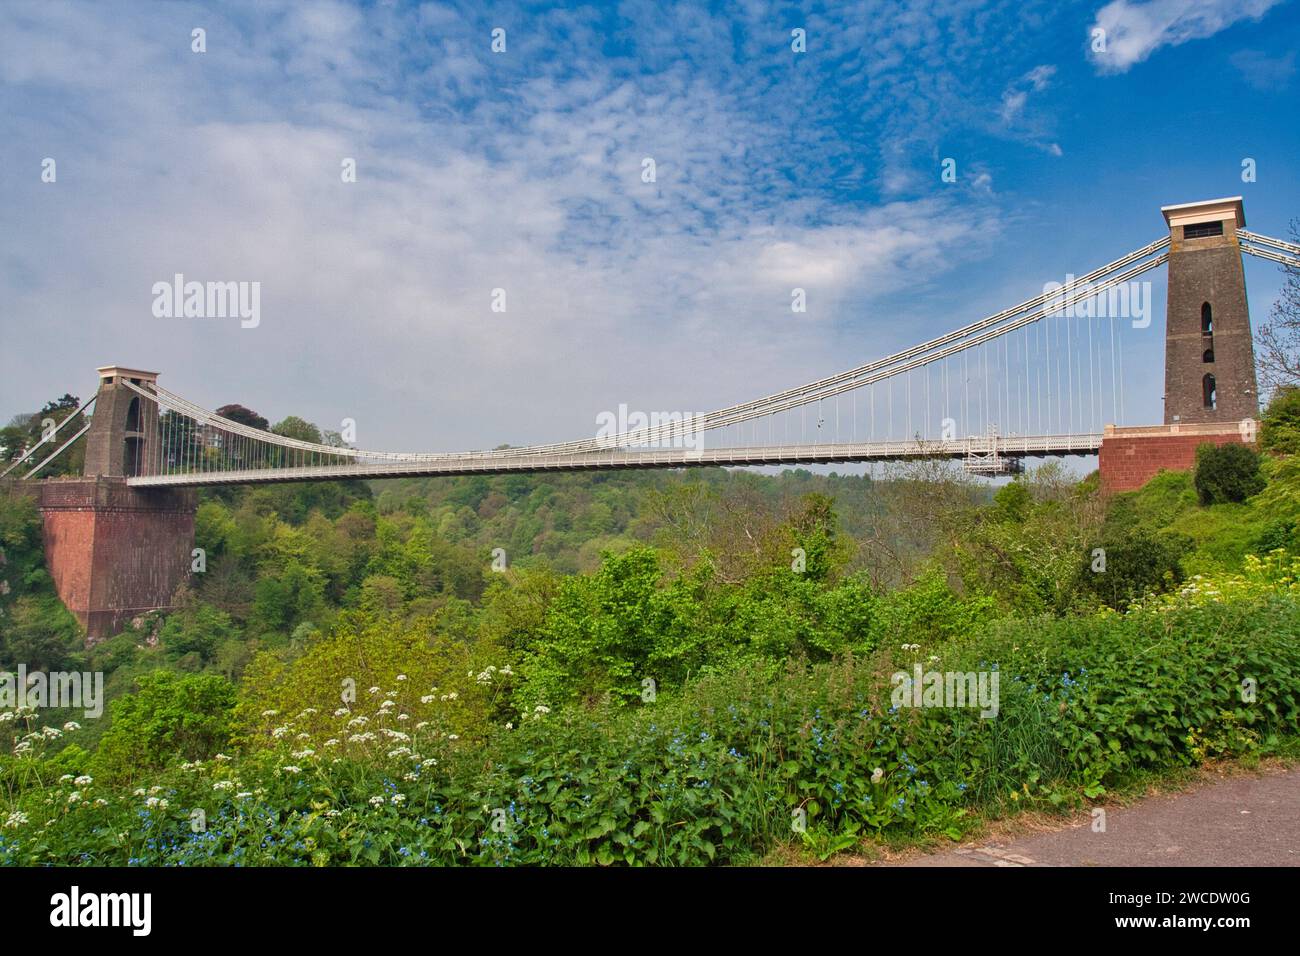 Dieses Bild zeigt eine malerische Brücke über einem ruhigen Fluss, umgeben von majestätischen hohen Türmen Stockfoto